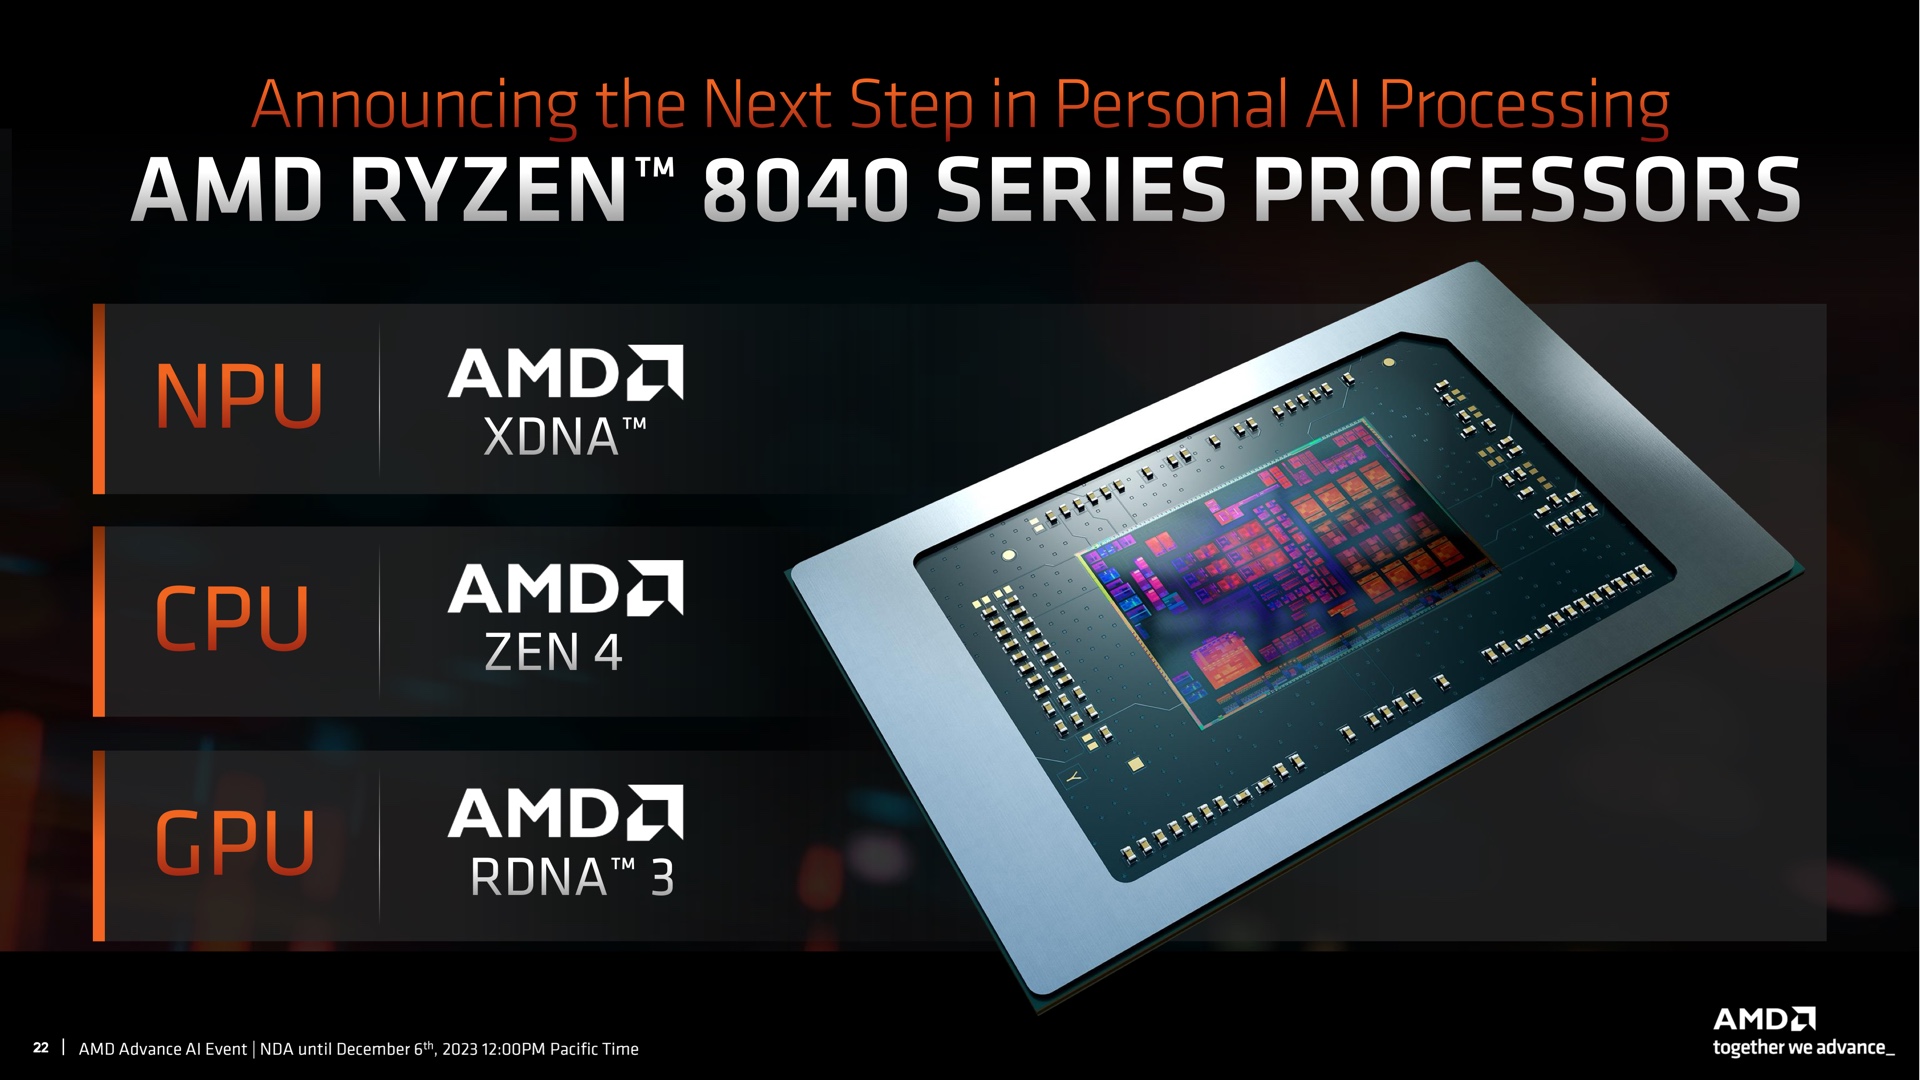 AMD kunngjorde brått Ryzen 8040-mobilprosessorer med Zen 4-kjerner, RDNA 3-grafikk og XDNA NPU-nervebrikke.